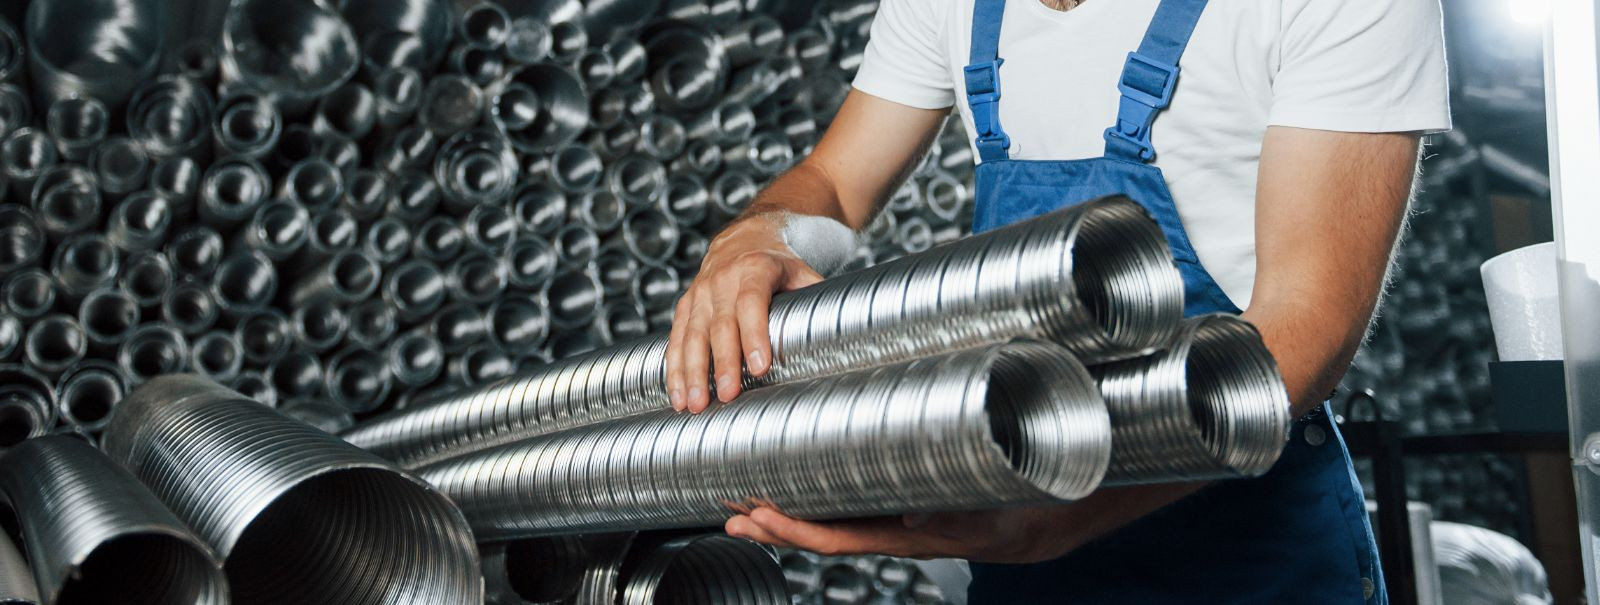 Metaline OÜ on teie usaldusväärne partner ventilatsioonisüsteemide maailmas. Kuigi meie ettevõte on noor, toetub meie kollektiiv aastatepikkusele kogemusele ja 